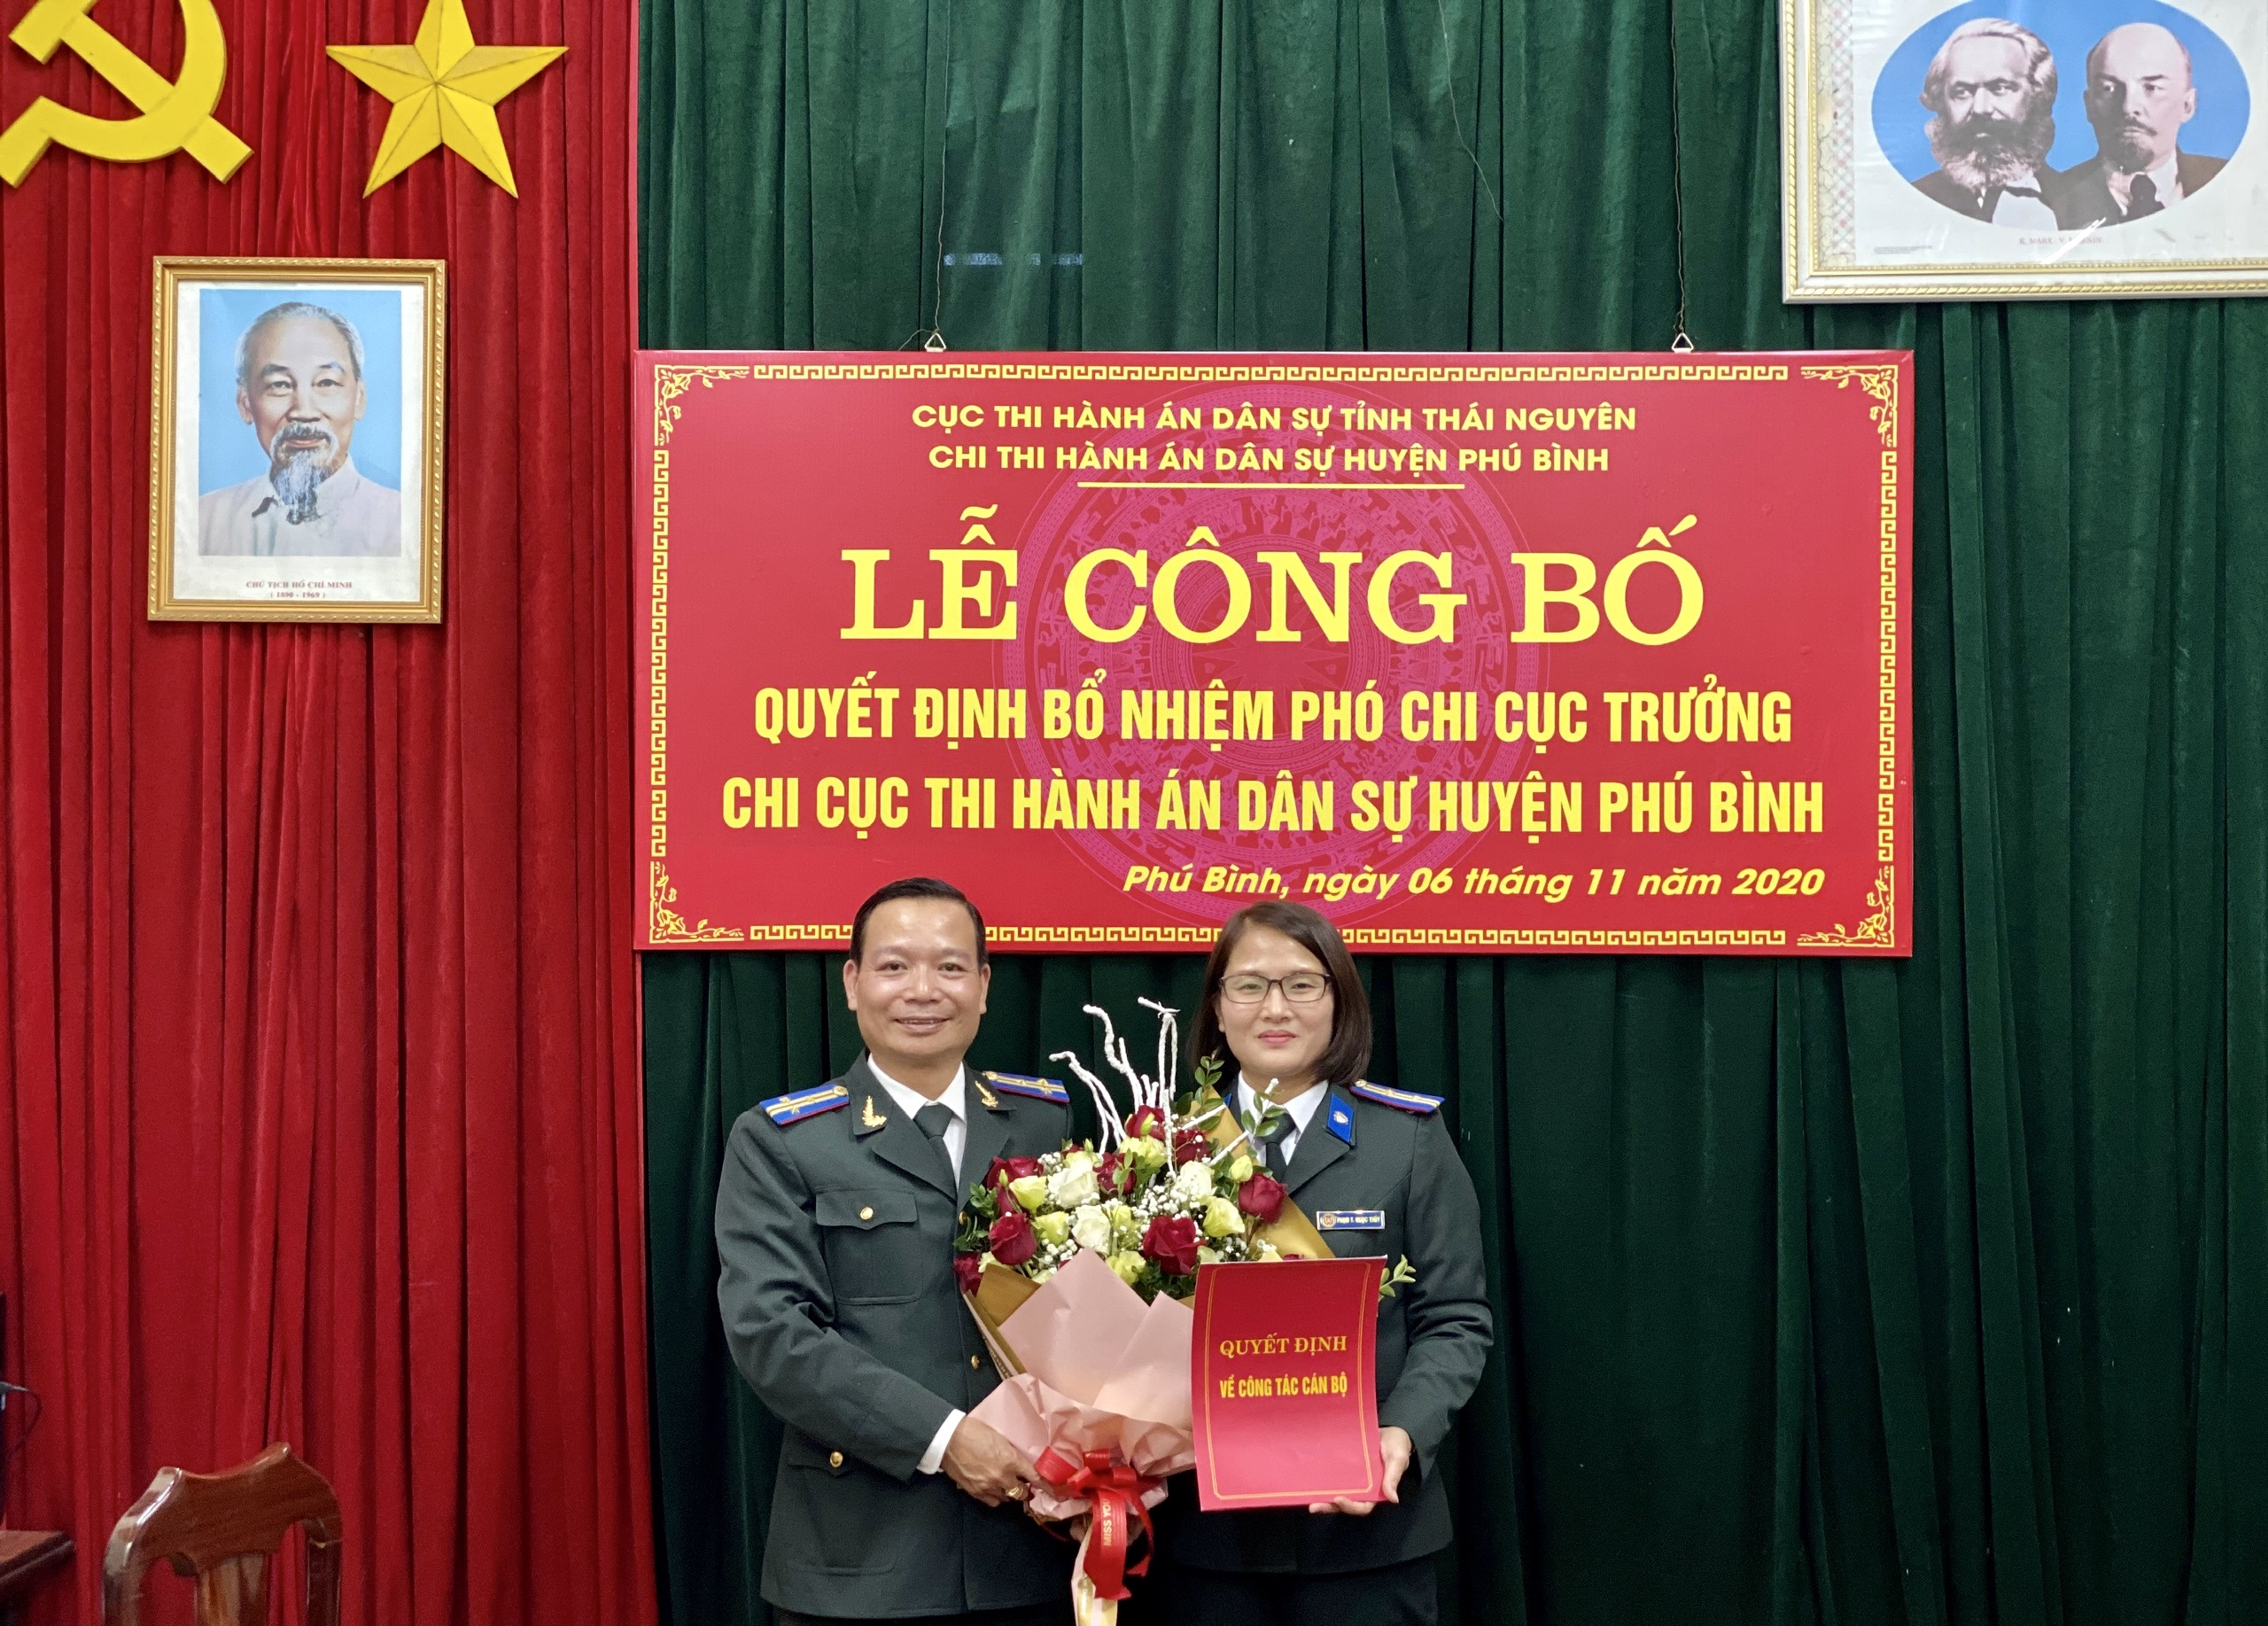 Trao quyết định điều động và bổ nhiệm Phó Chi cục trưởng Chi cục Thi hành án dân sự huyện Phú Bình